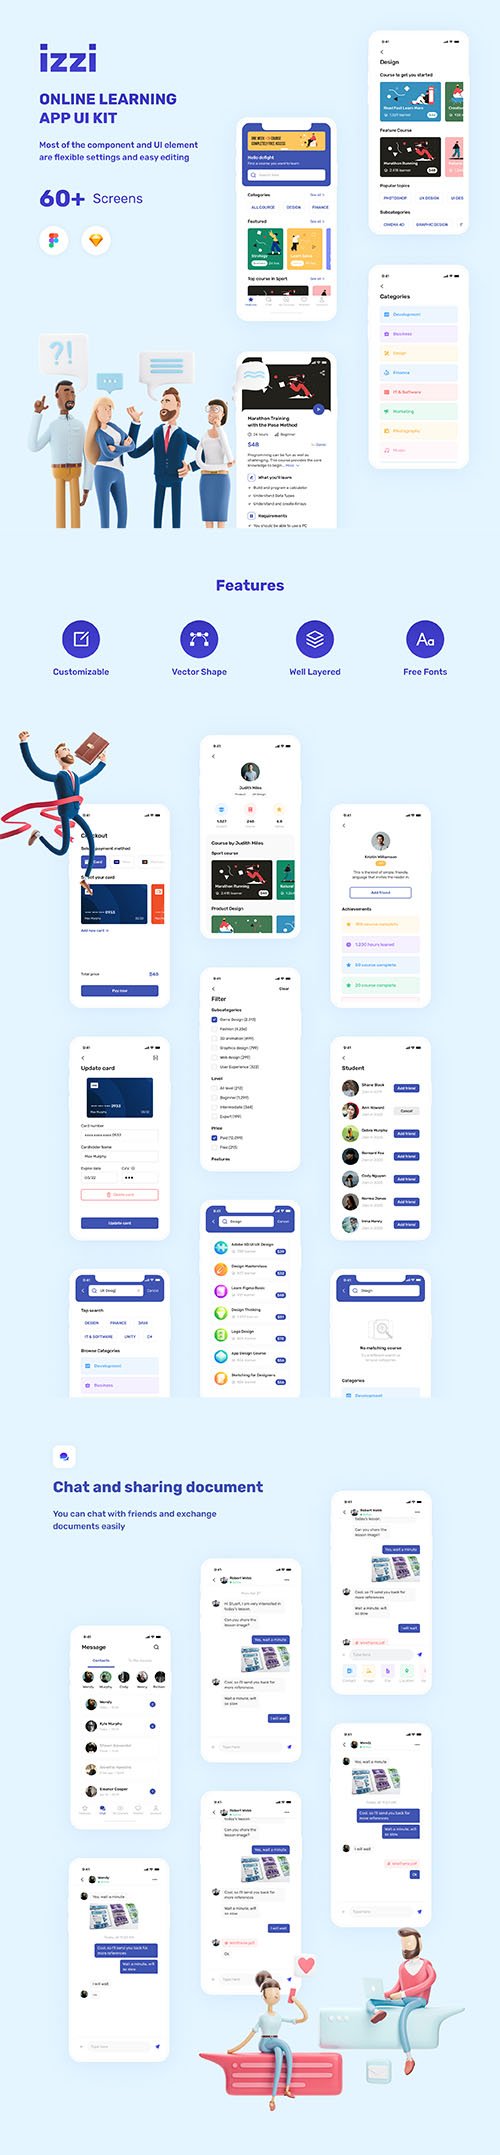 izzi - Online Learning App UI Kit - UI8